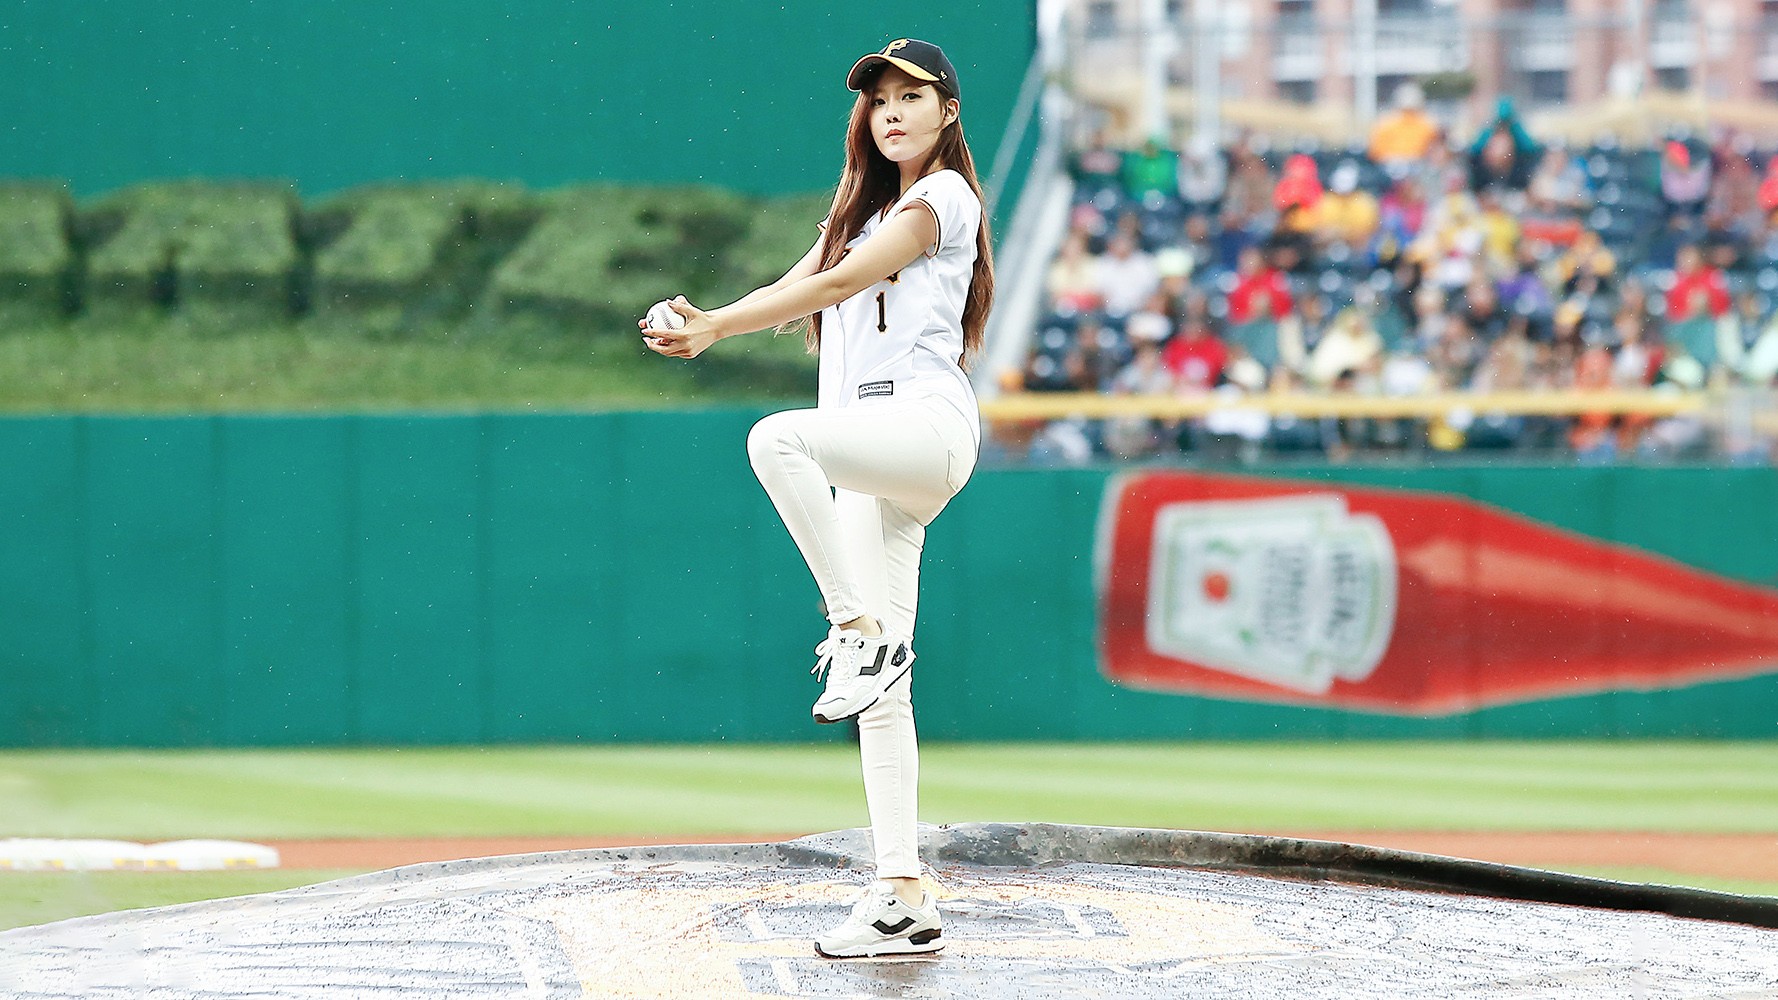 People 1778x1000 K-pop Hyomin (T-ara) women singer sportswear brunette Baseball Stadium sport baseball hat women with hats Korean women long hair Asian